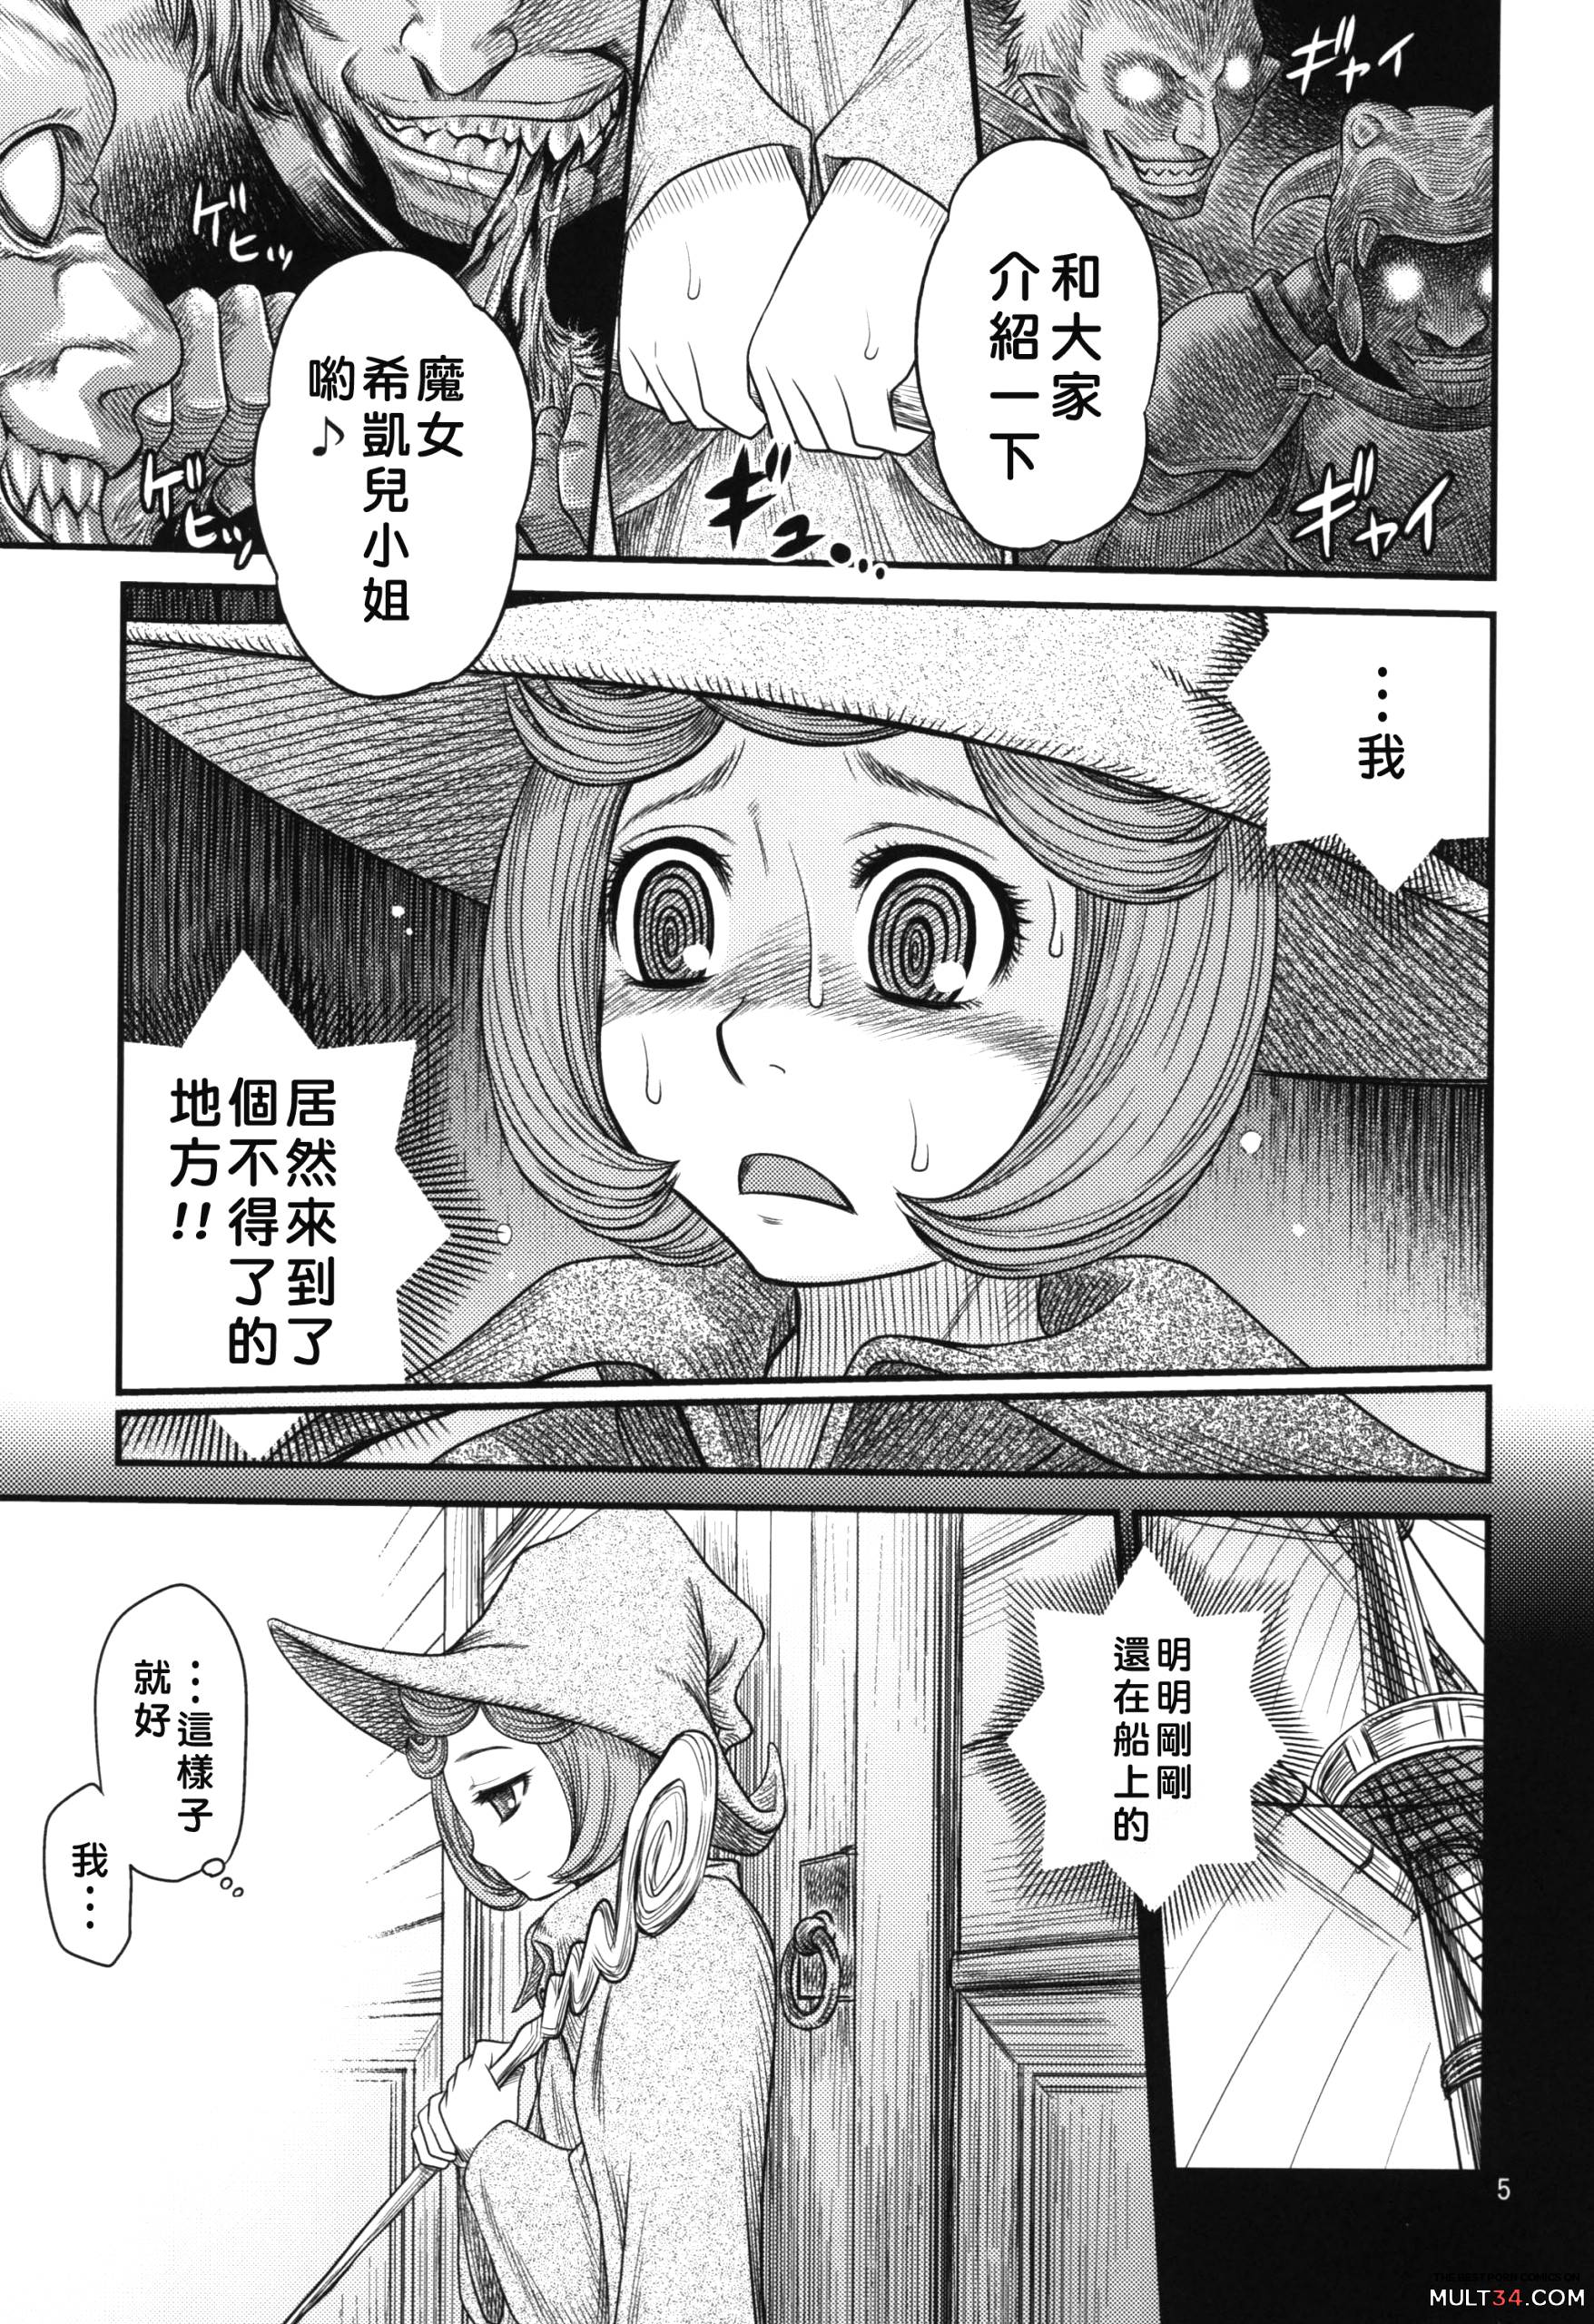 Kuru Kuru Sonia!! page 4